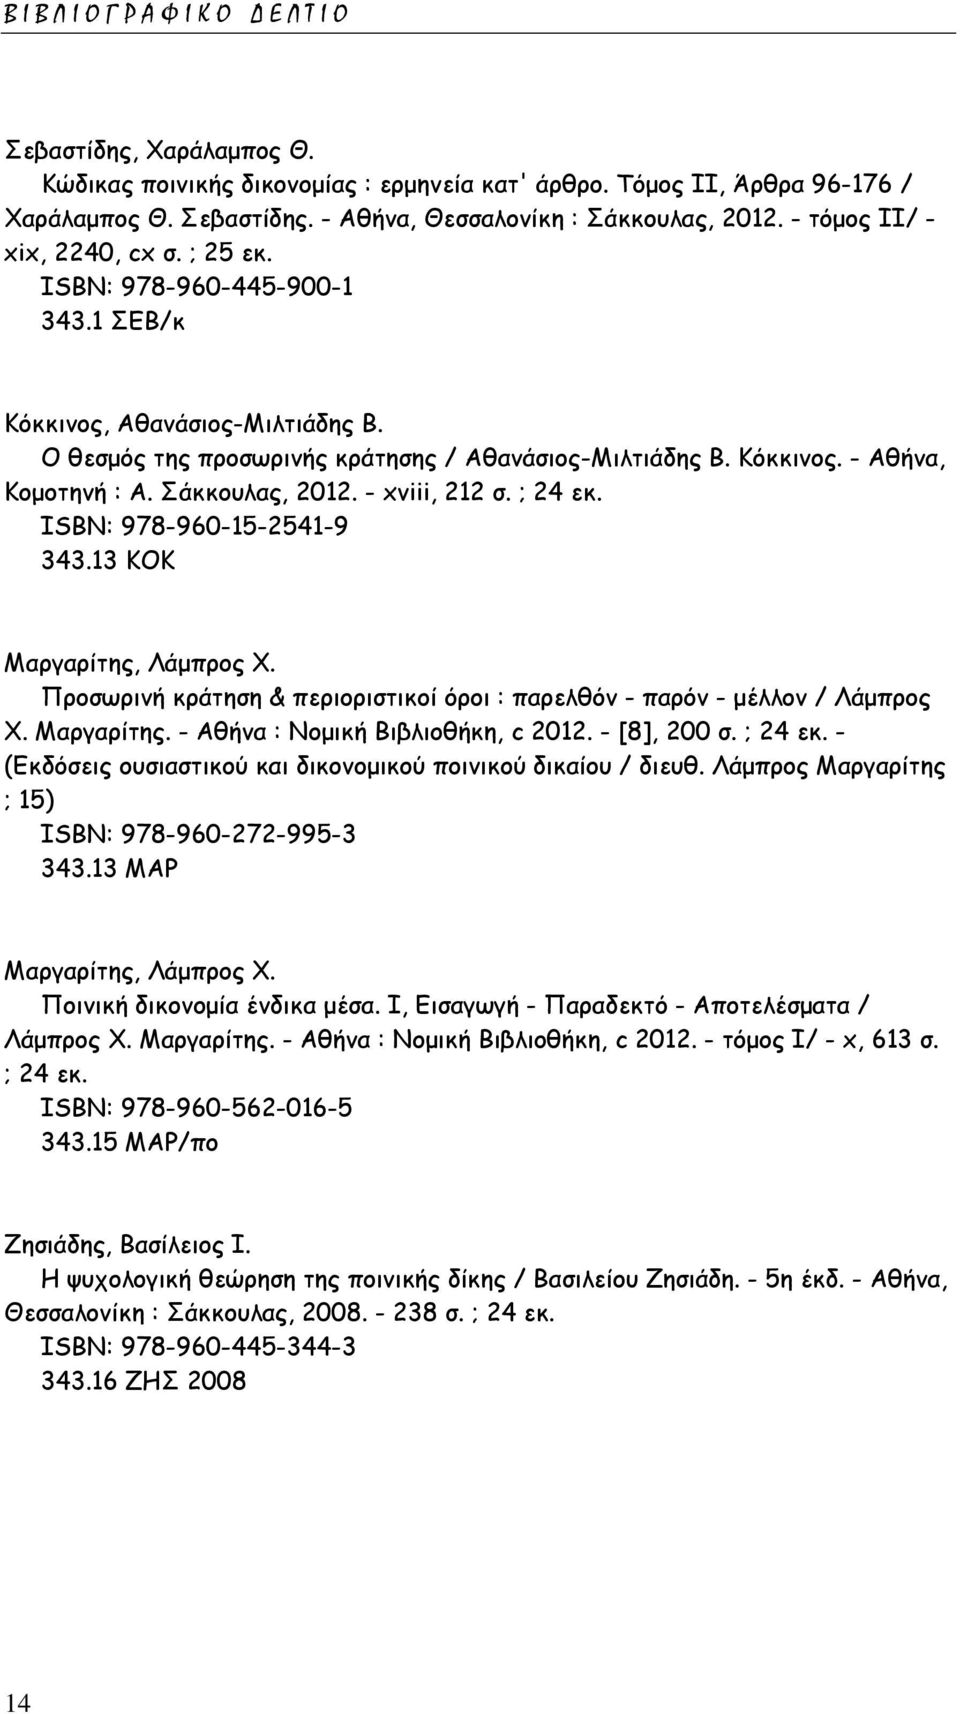 Σάκκουλας, 2012. - xviii, 212 σ. ; 24 εκ. ISΒΝ: 978-960-15-2541-9 343.13 ΚΟΚ Μαργαρίτης, Λάμπρος Χ. Προσωρινή κράτηση & περιοριστικοί όροι : παρελθόν - παρόν - μέλλον / Λάμπρος Χ. Μαργαρίτης. - Αθήνα : Νομική Βιβλιοθήκη, c 2012.